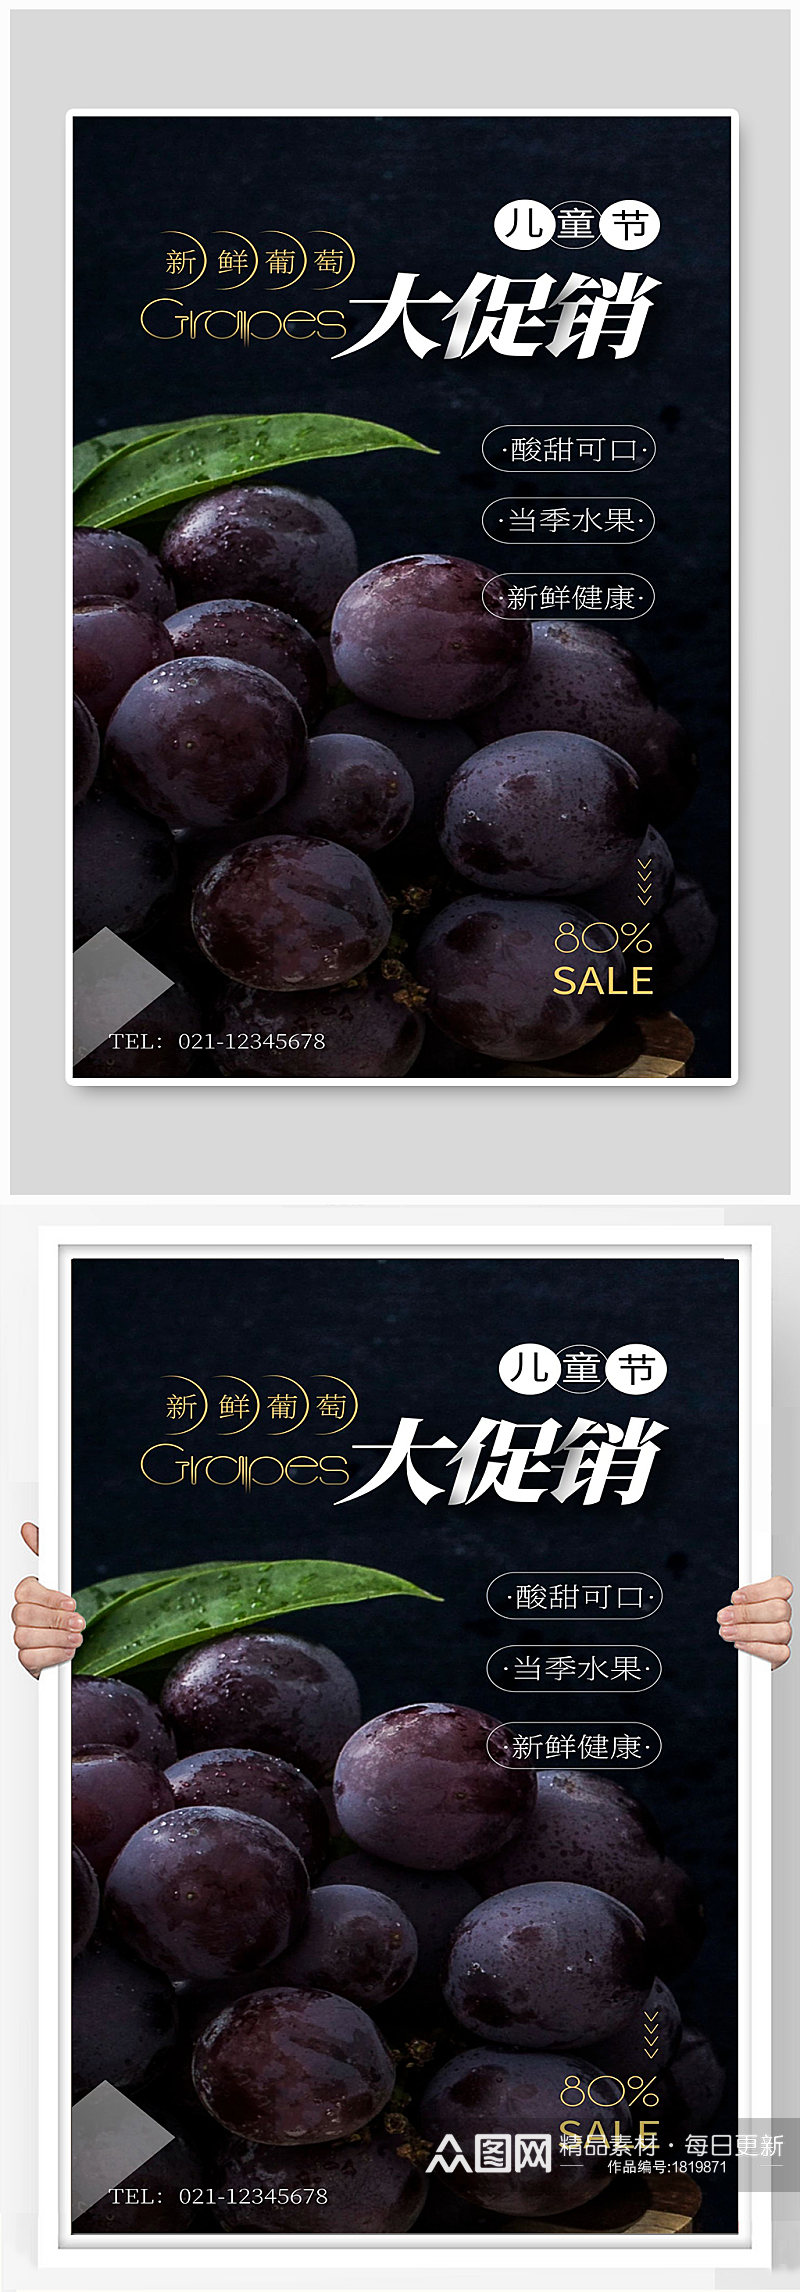 新鲜葡萄大促销当季水里宣传海报素材